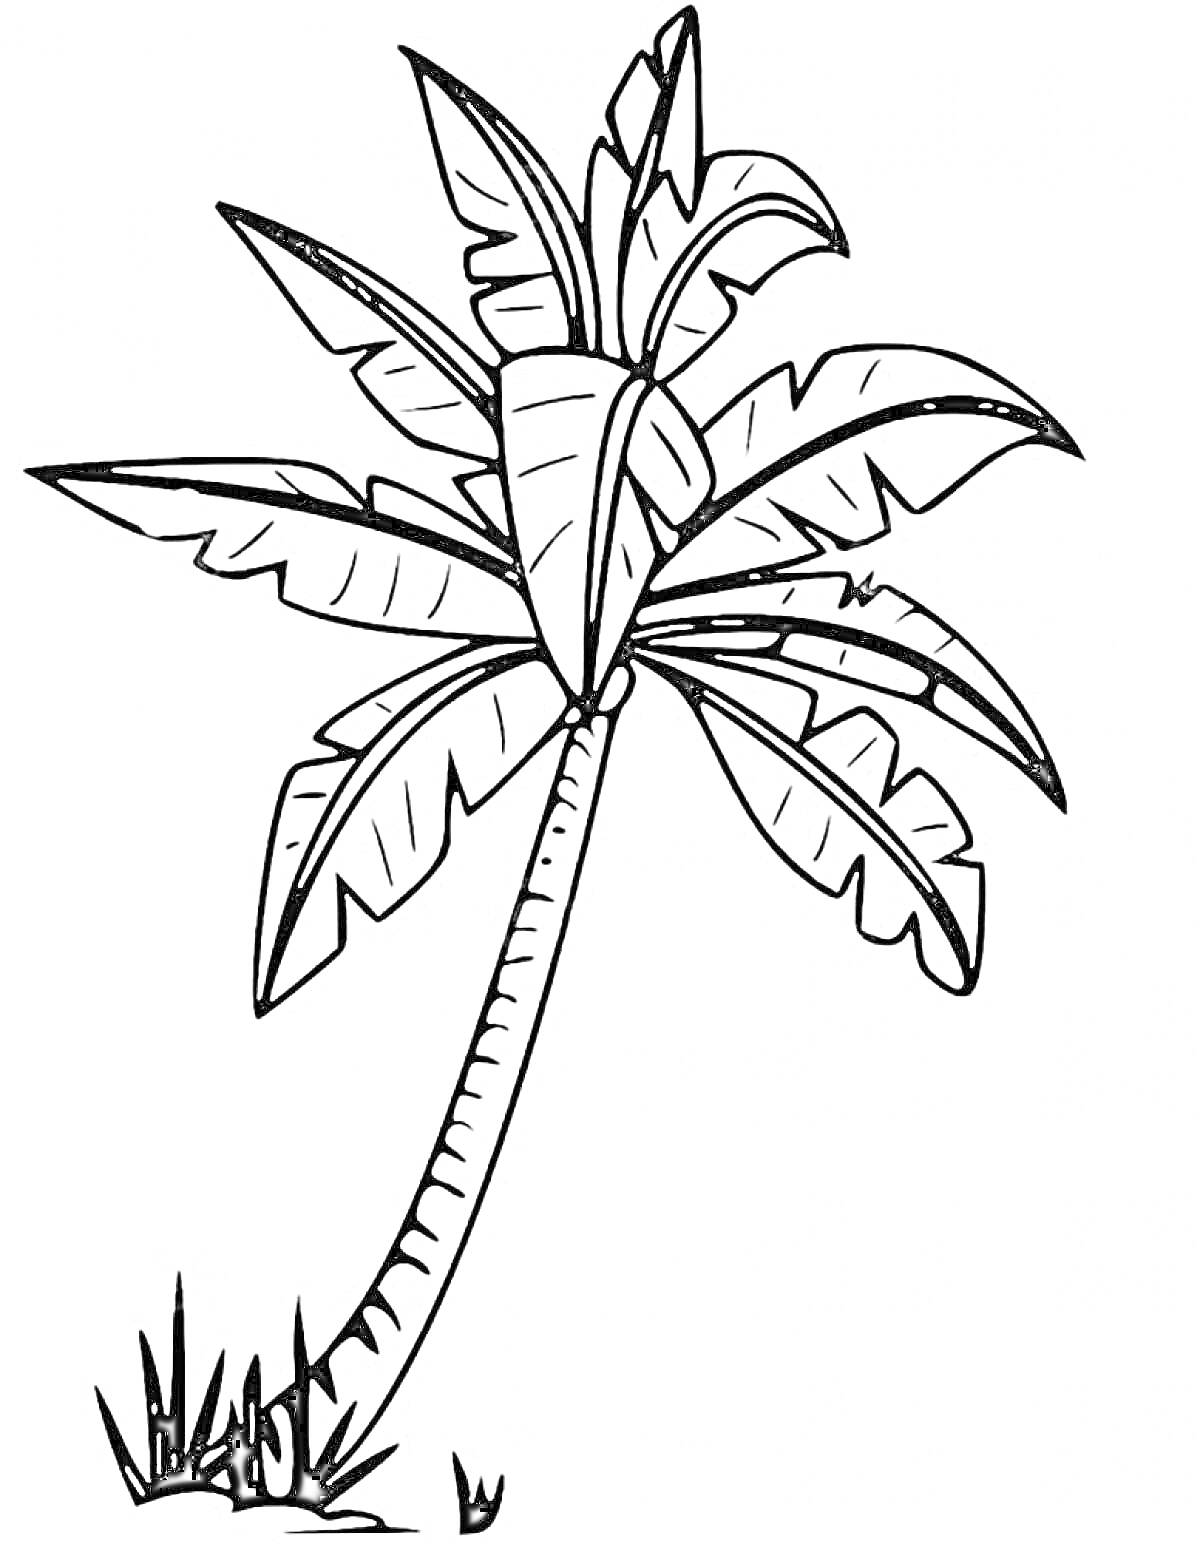 Пальма с длинным изогнутым стволом и большим количеством крупных листьев на фоне травы